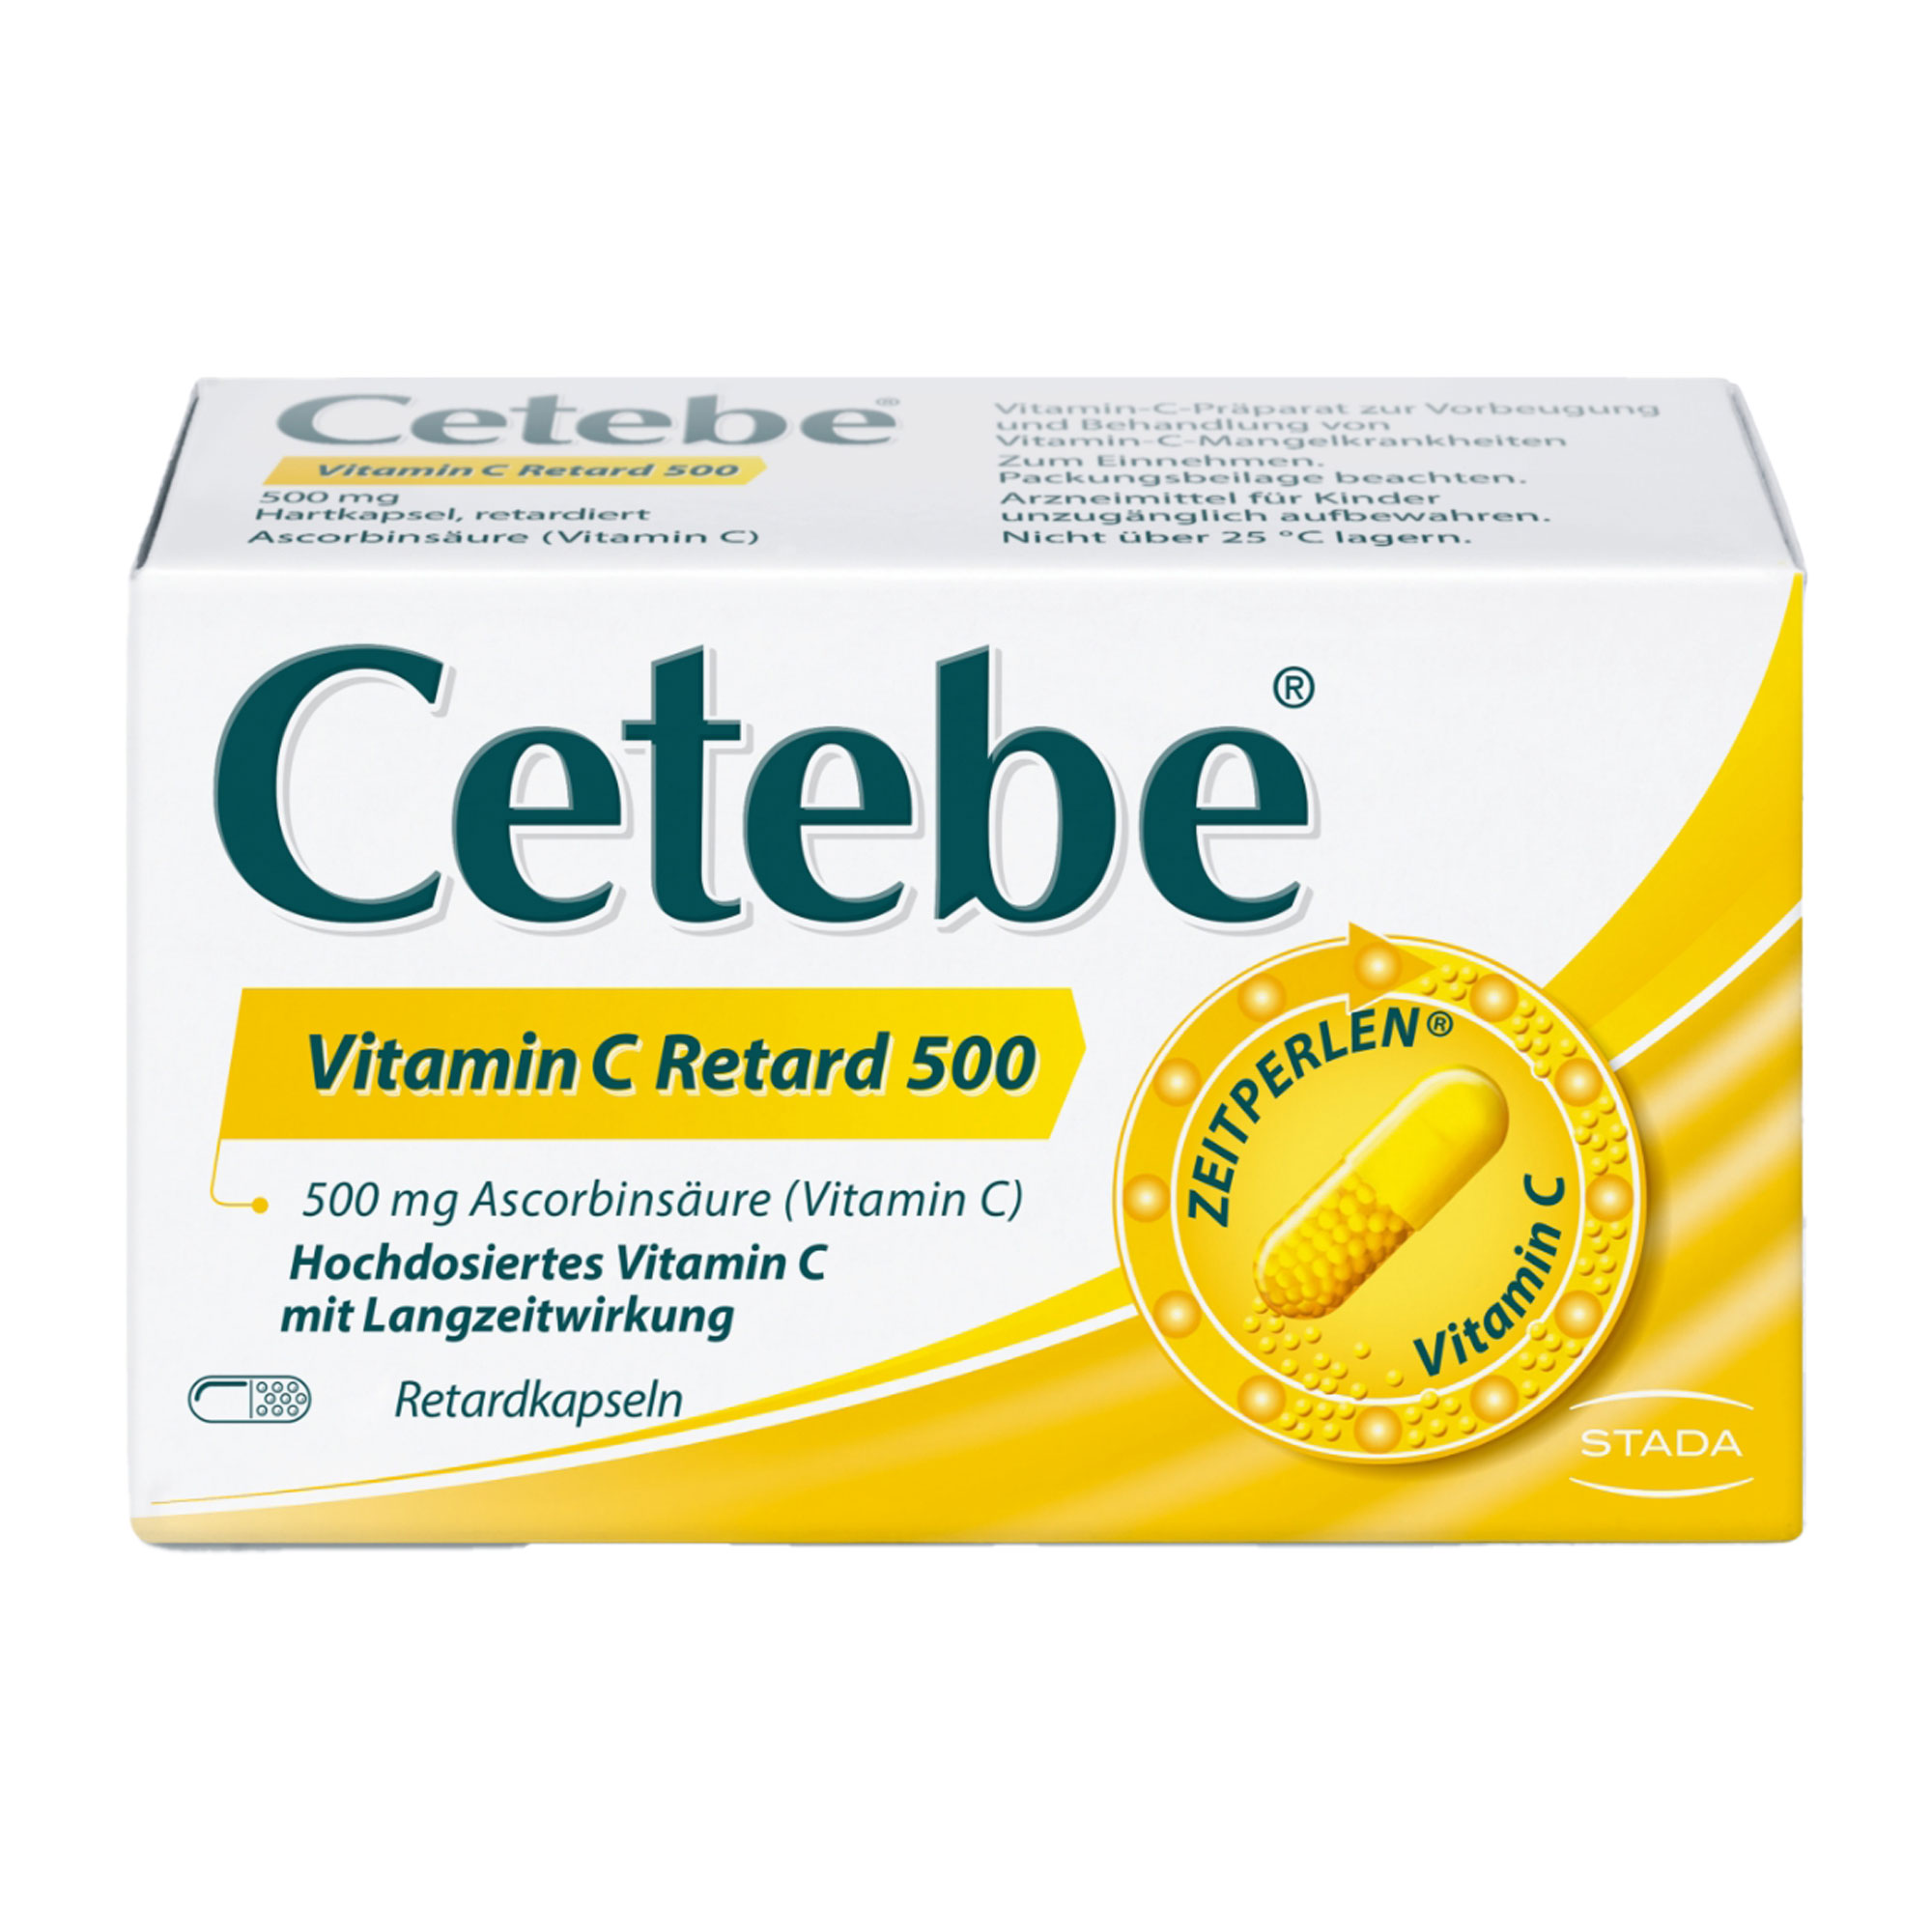 Vitamin-C-Präparat zur Vorbeugung eines Mangels und Behandlung von Mangel-Krankheiten.